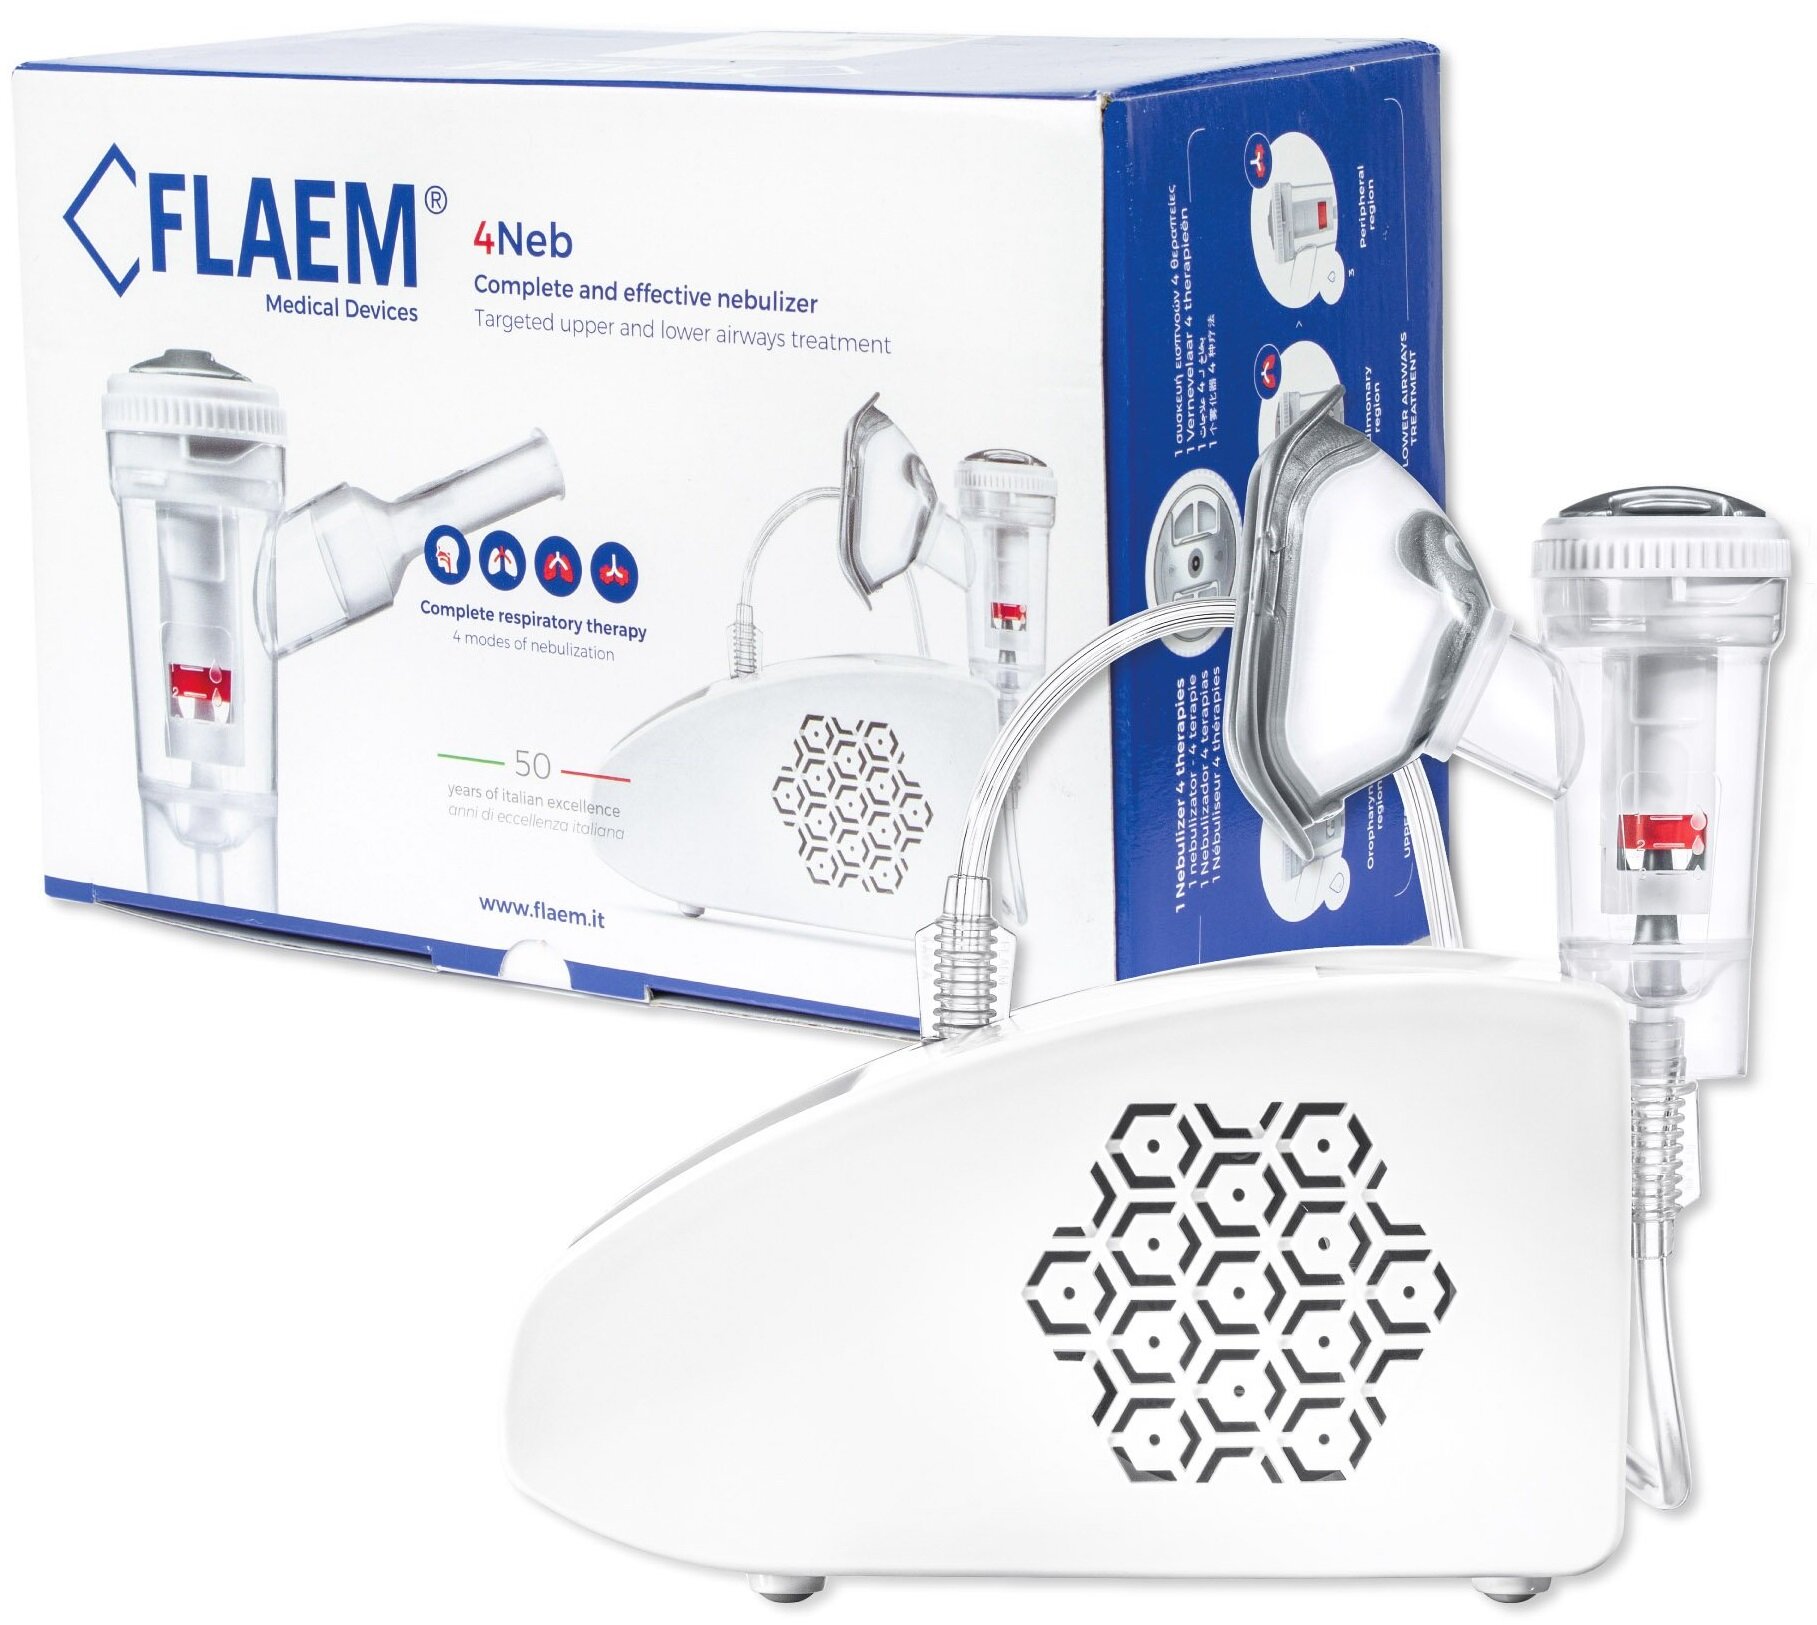 Inhalator nebulizator pneumatyczny FLAEM 4NEB 0.53 ml/min